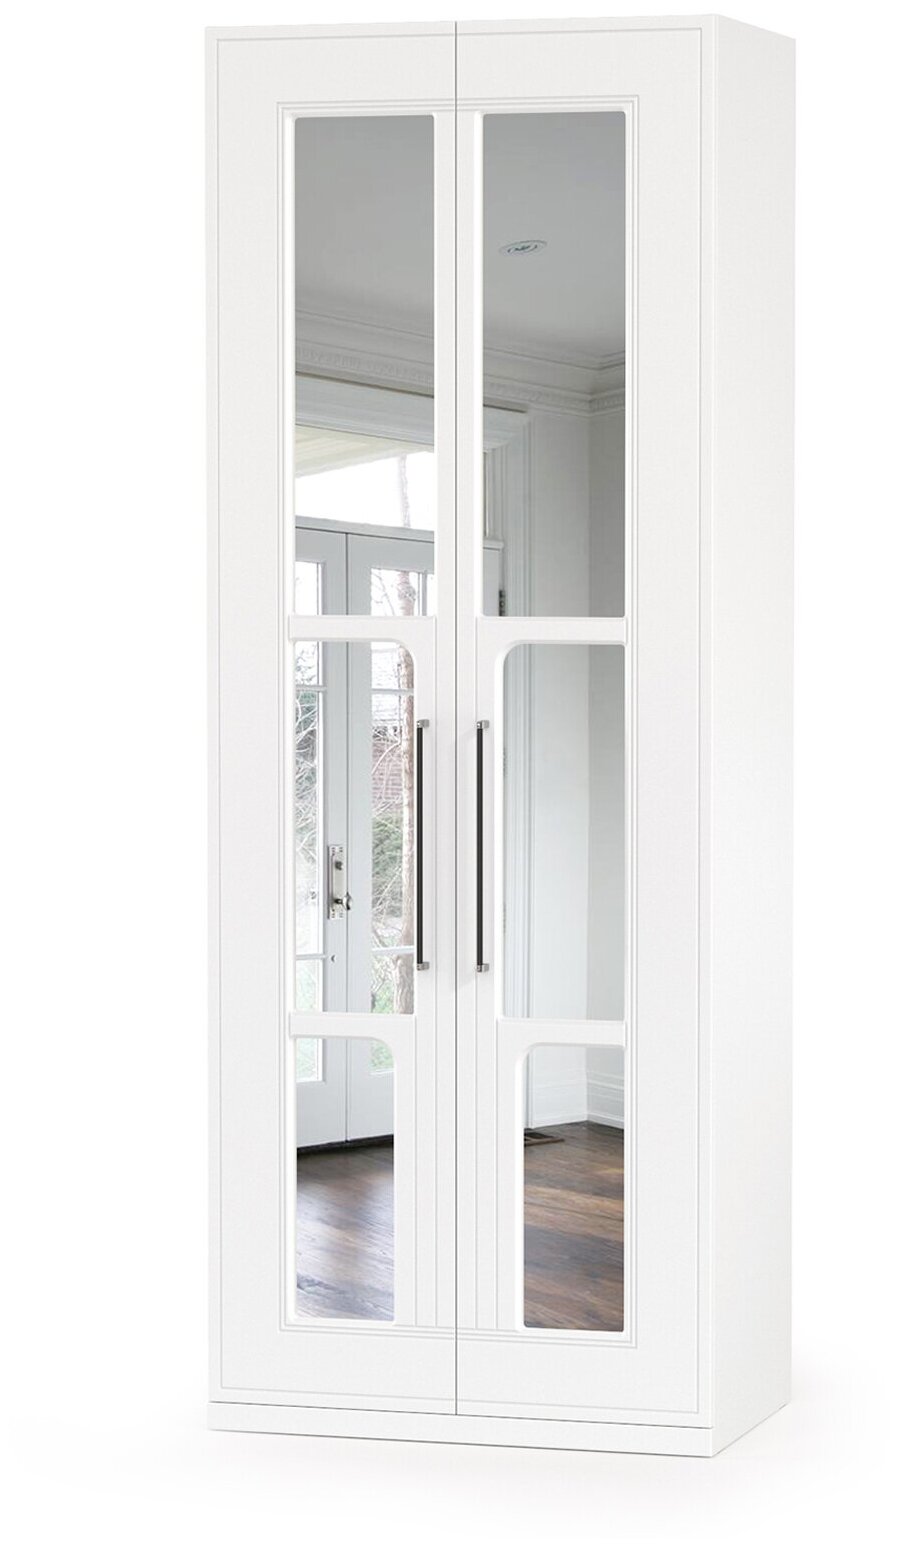 Шкаф для одежды с зеркалом Валенсия 13.329, цвет белый шагрень, ШхГхВ 84х54,2х225,3 см.